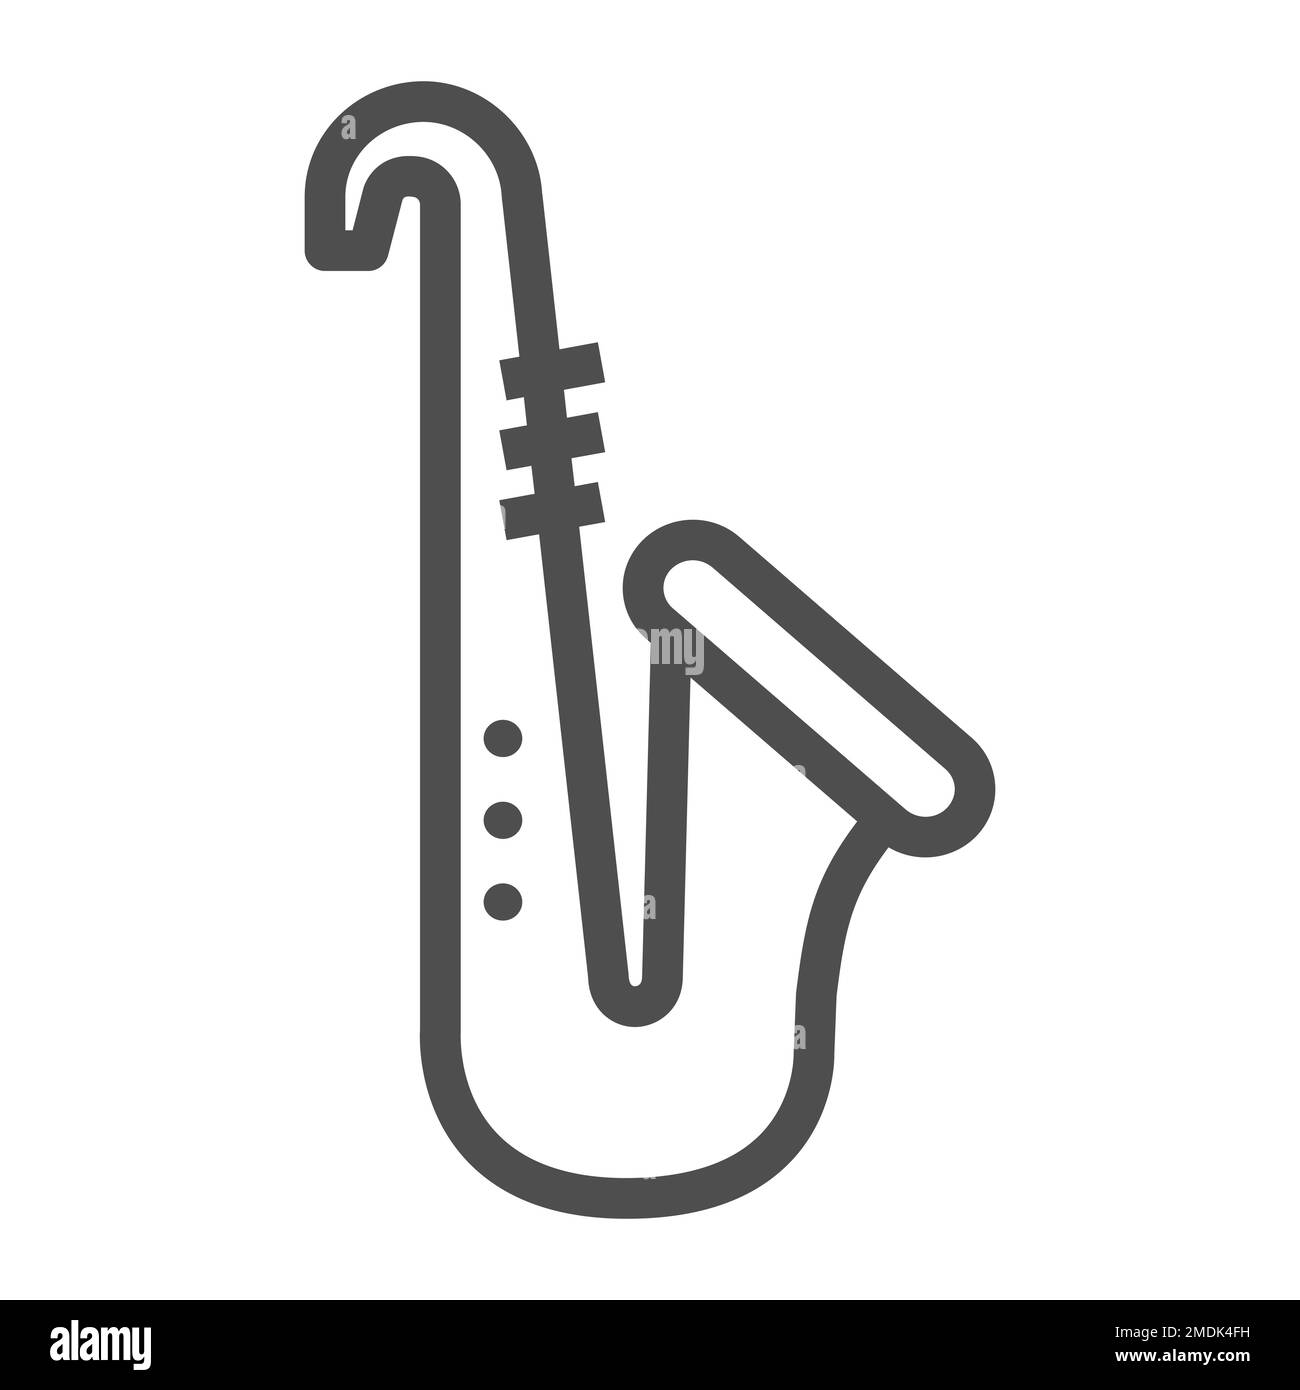 Trompeta de Imágenes stock blanco y negro - Alamy